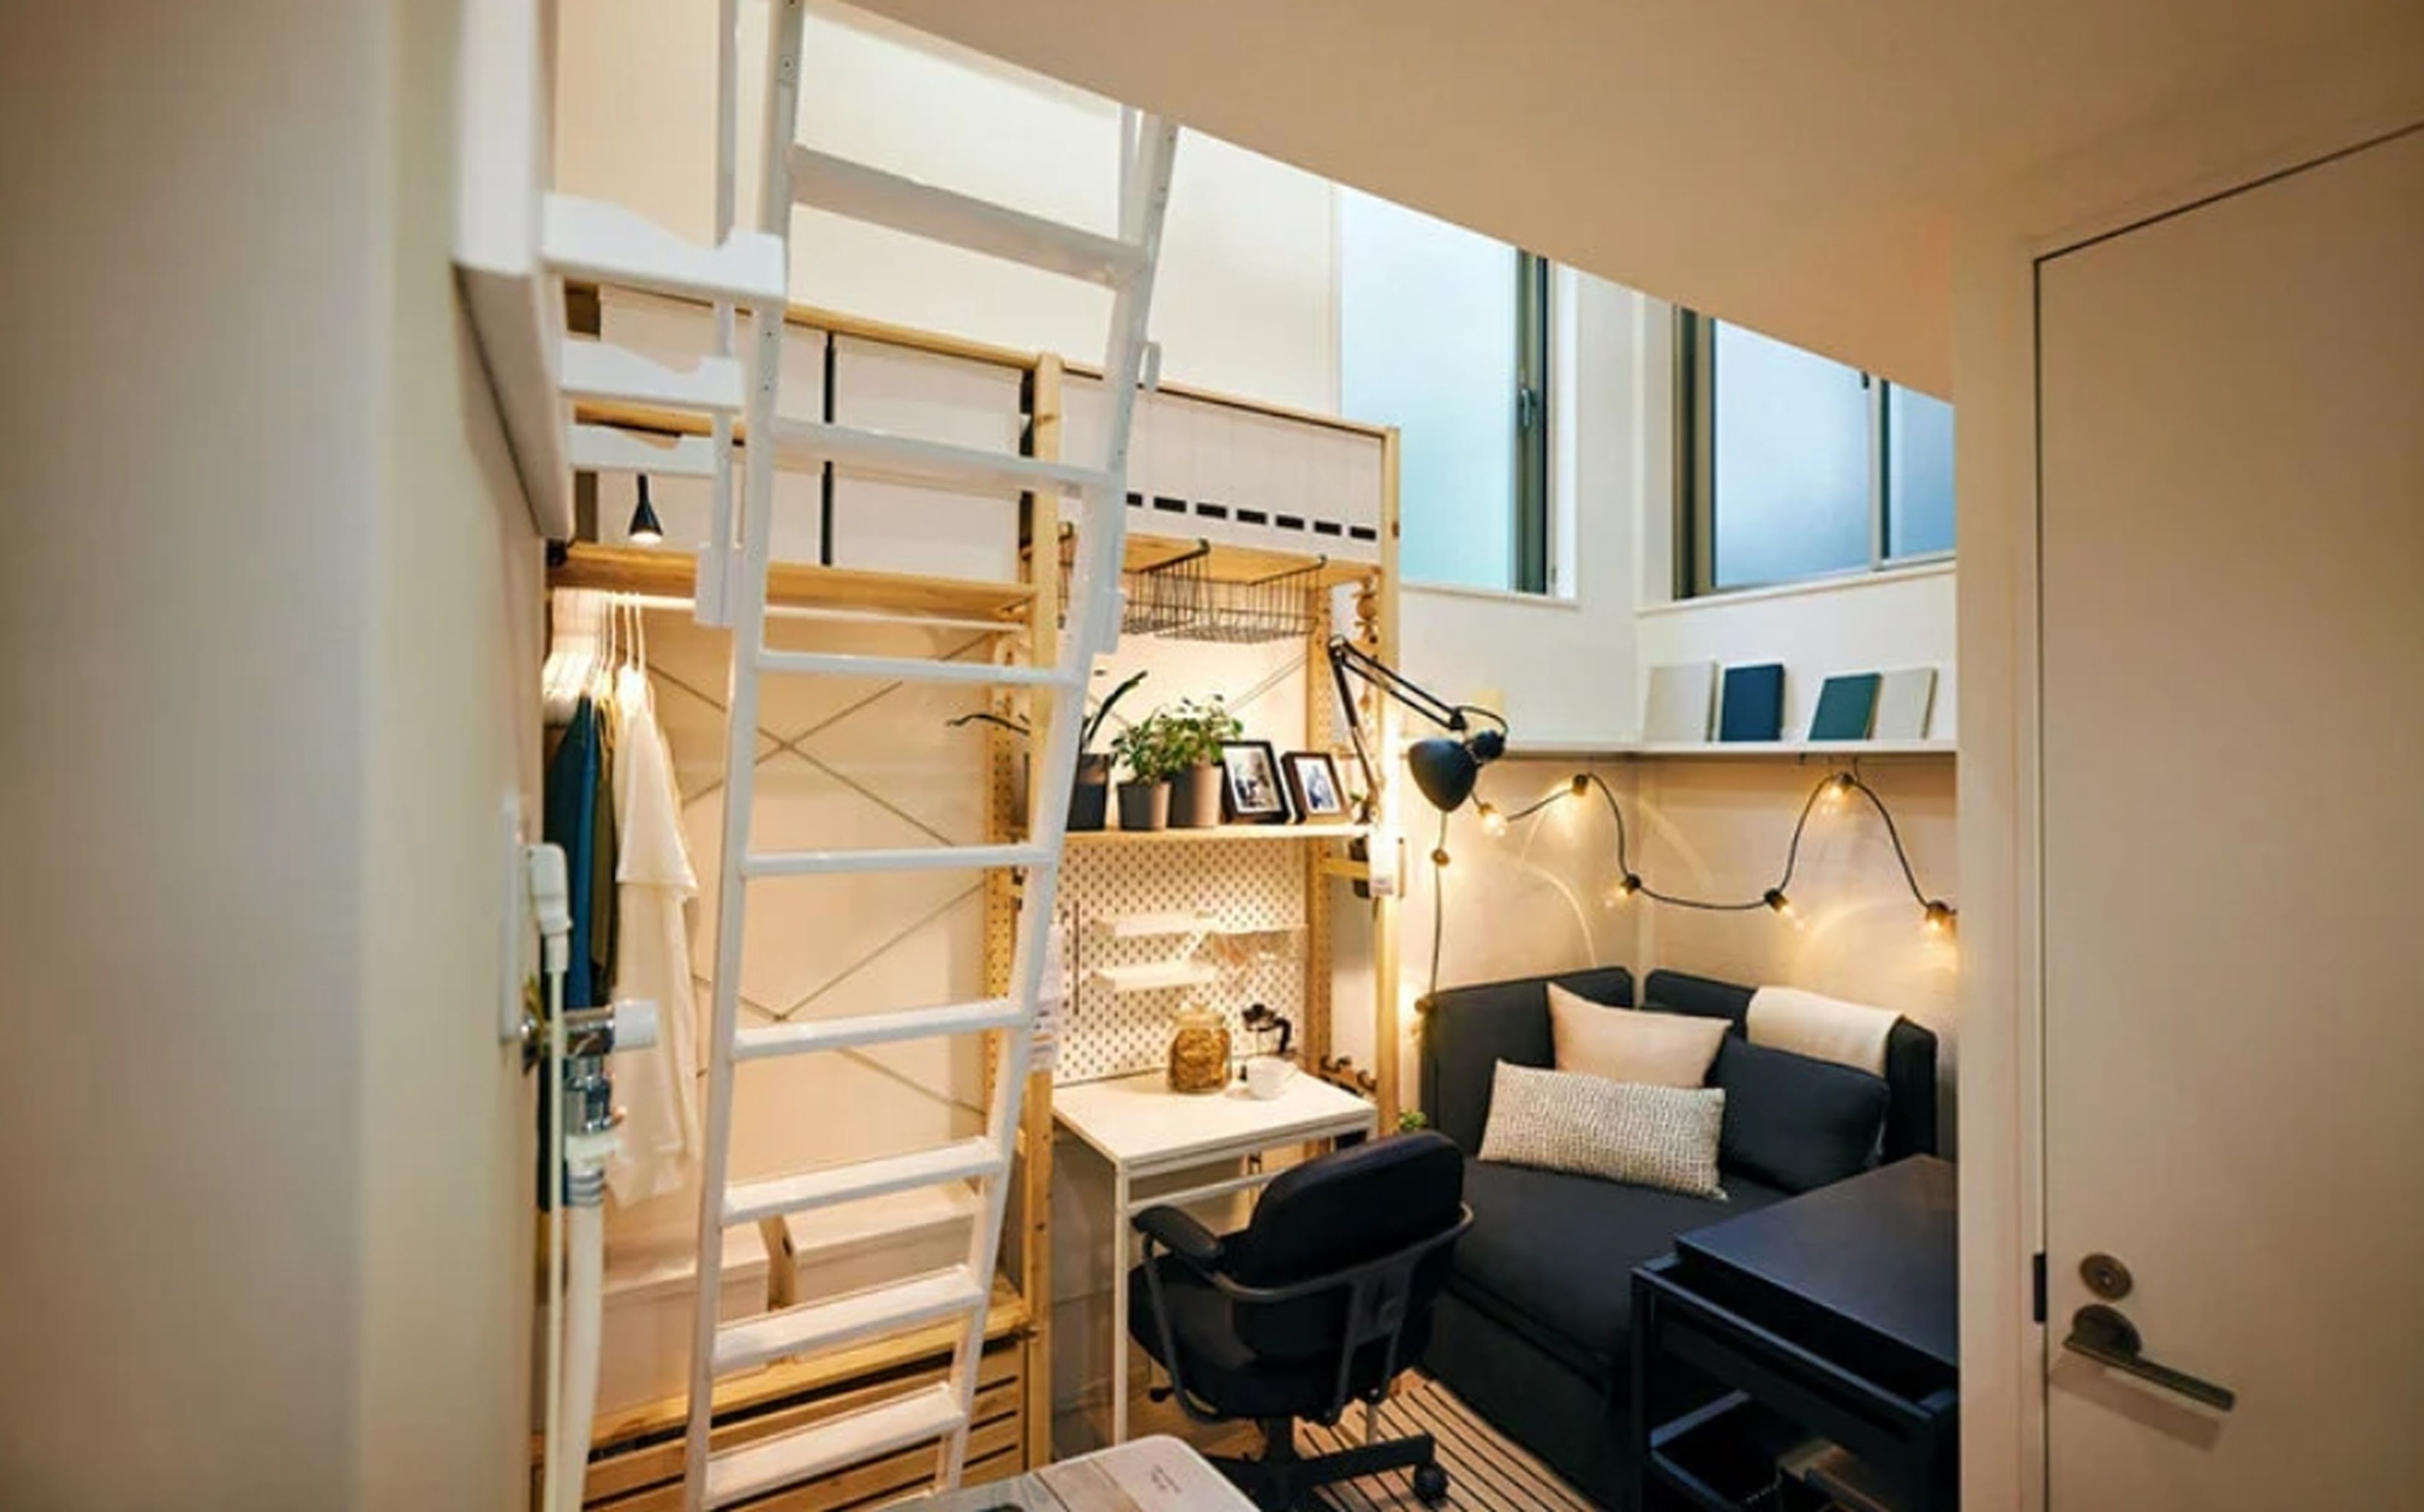 IKEA alquila una casa de 10 metros cuadrados en Tokio por 1 euro al mes